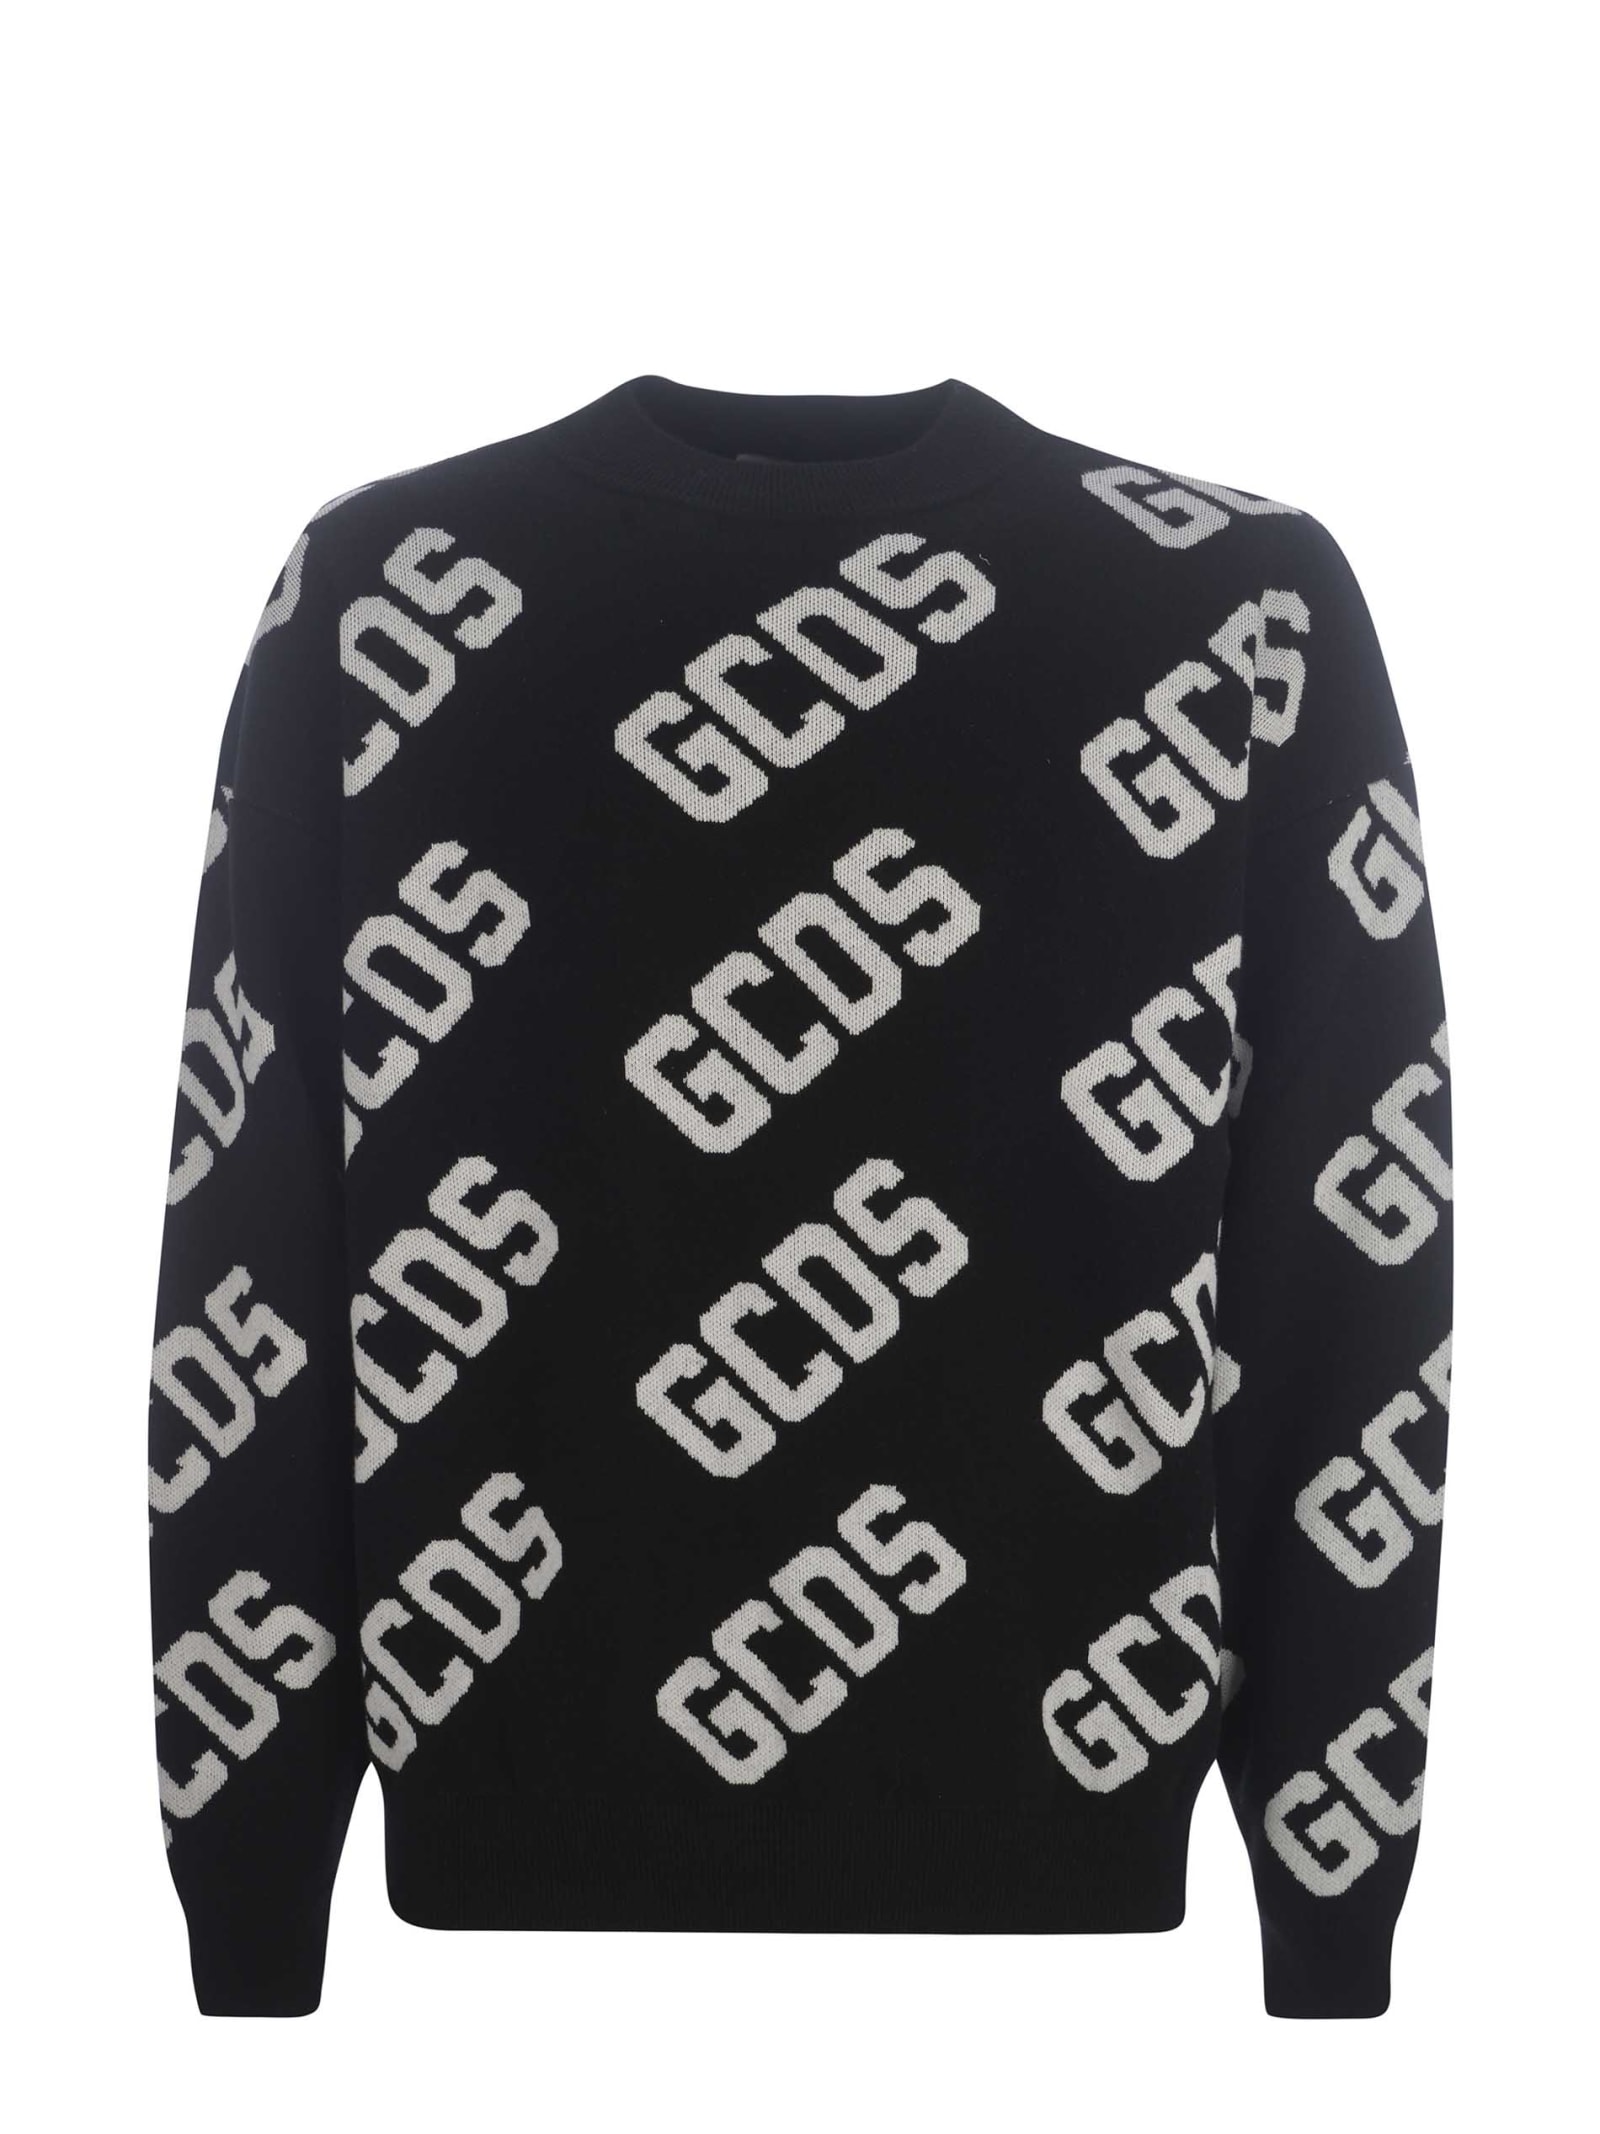 Sweater Gcds monogram In Wool Blend